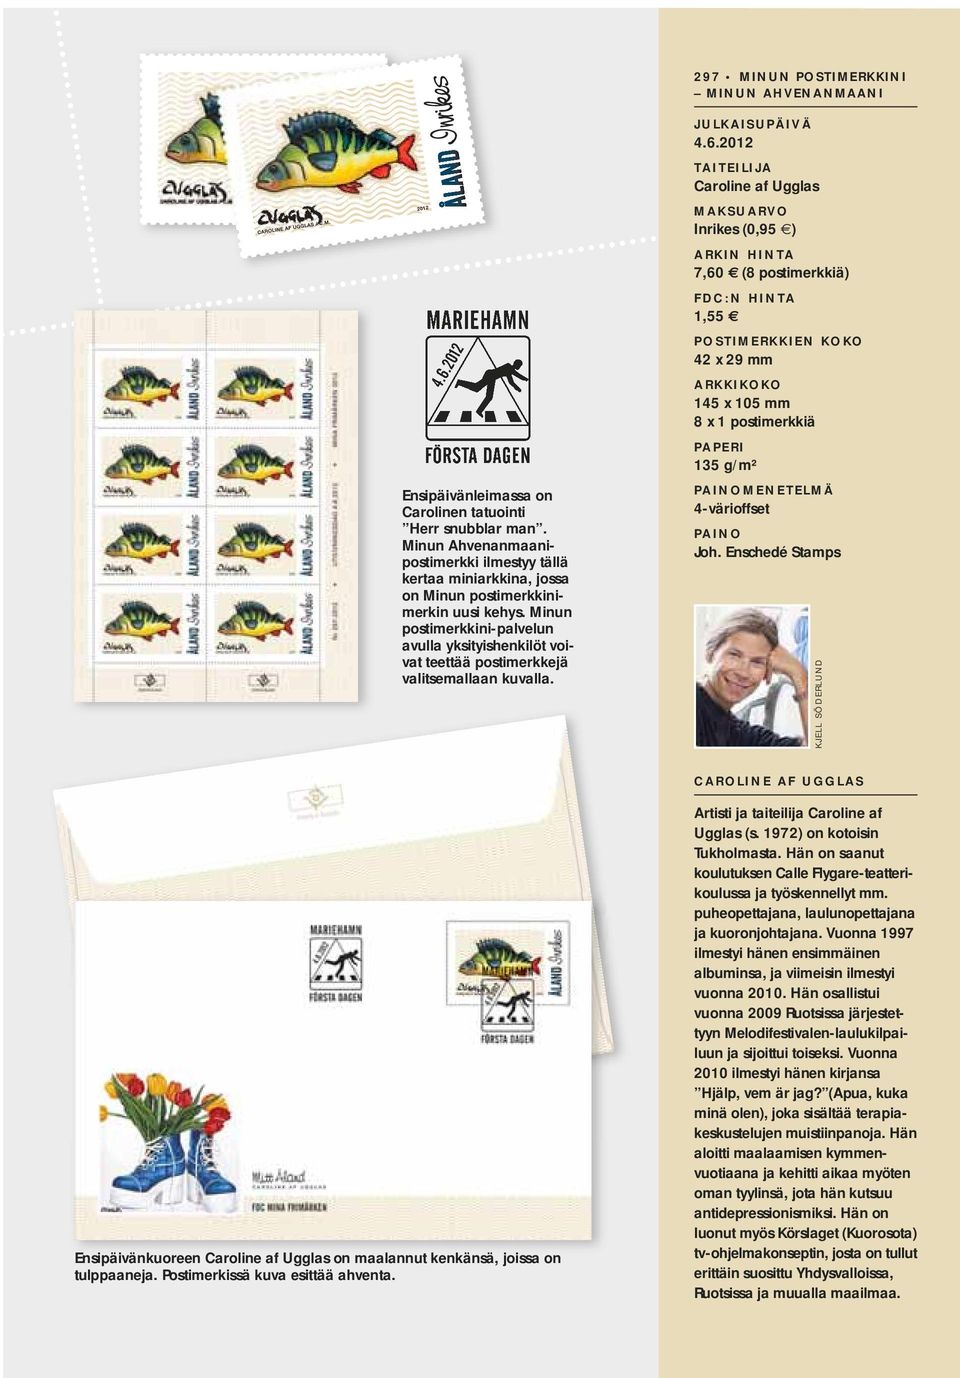 Minun postimerkkini-palvelun avulla yksityishenkilöt voivat teettää postimerkkejä valitsemallaan kuvalla.